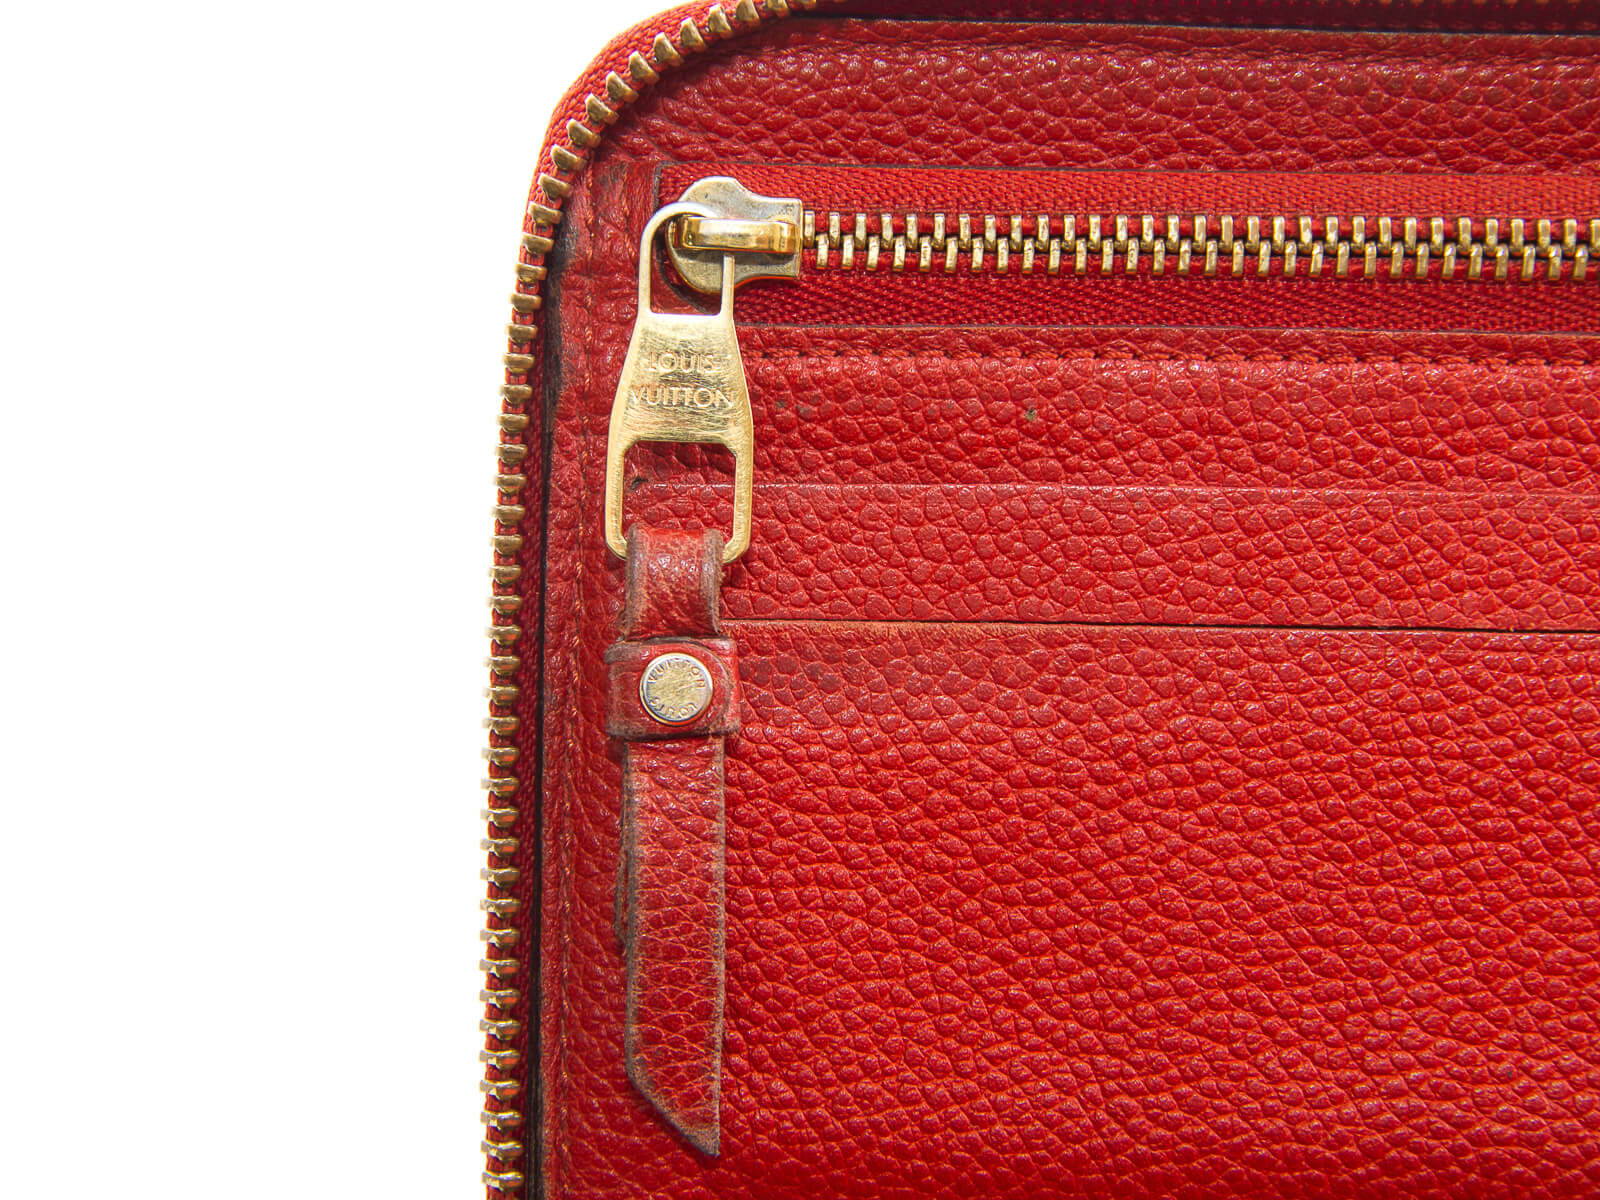 Authentic Louis Vuitton orange Empreinte leather zippy long wallet | Connect Japan Luxury